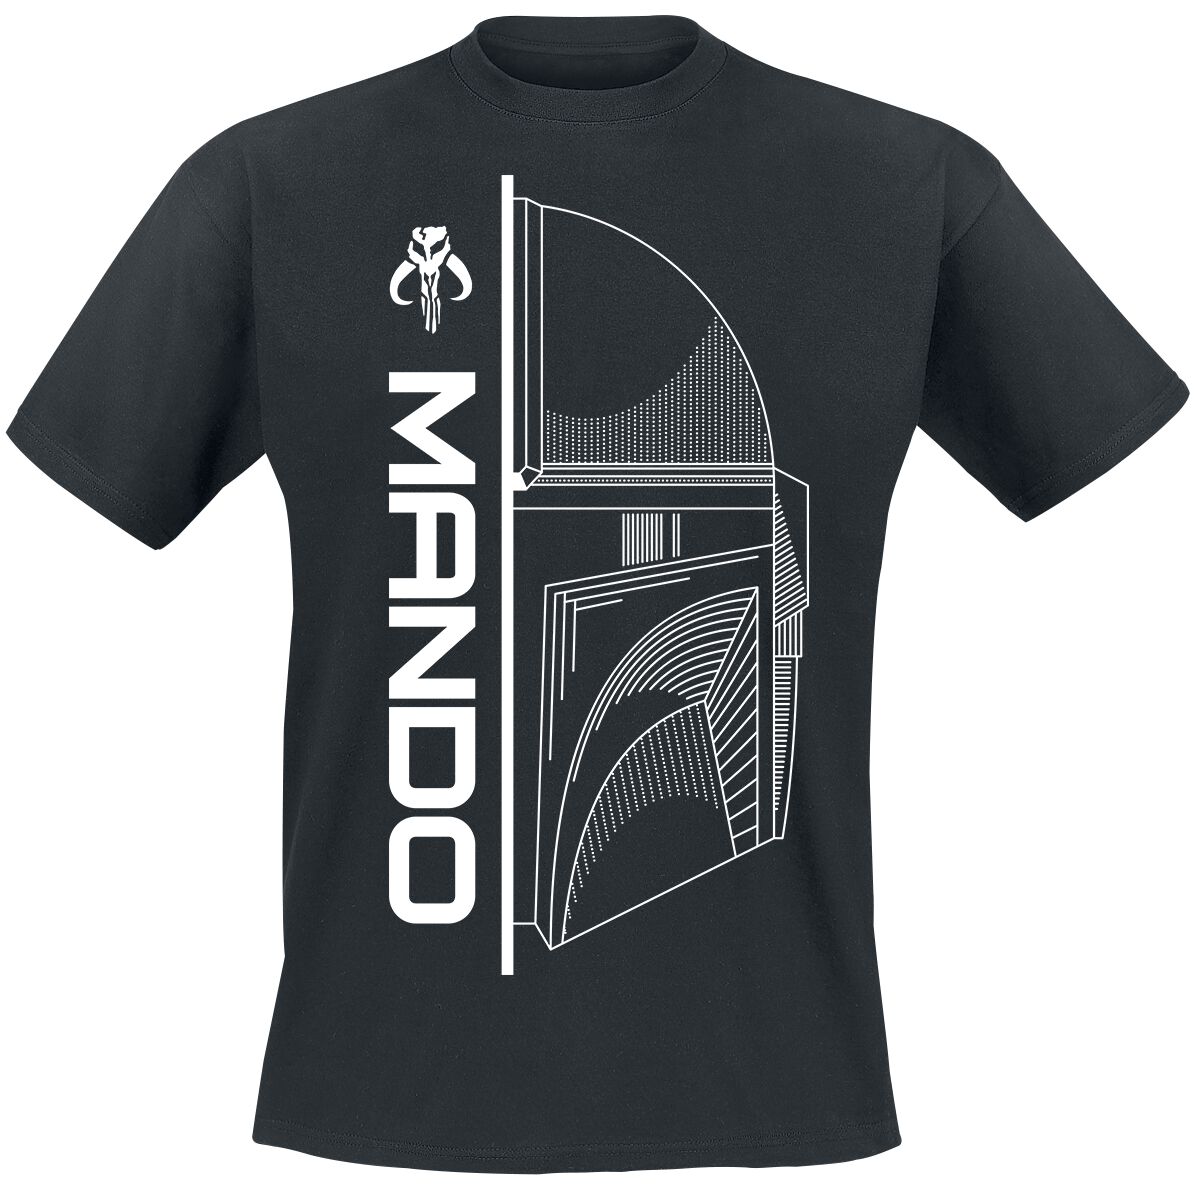 Star Wars T-Shirt - The Mandalorian - Mando - S bis XXL - für Männer - Größe XL - schwarz  - EMP exklusives Merchandise!